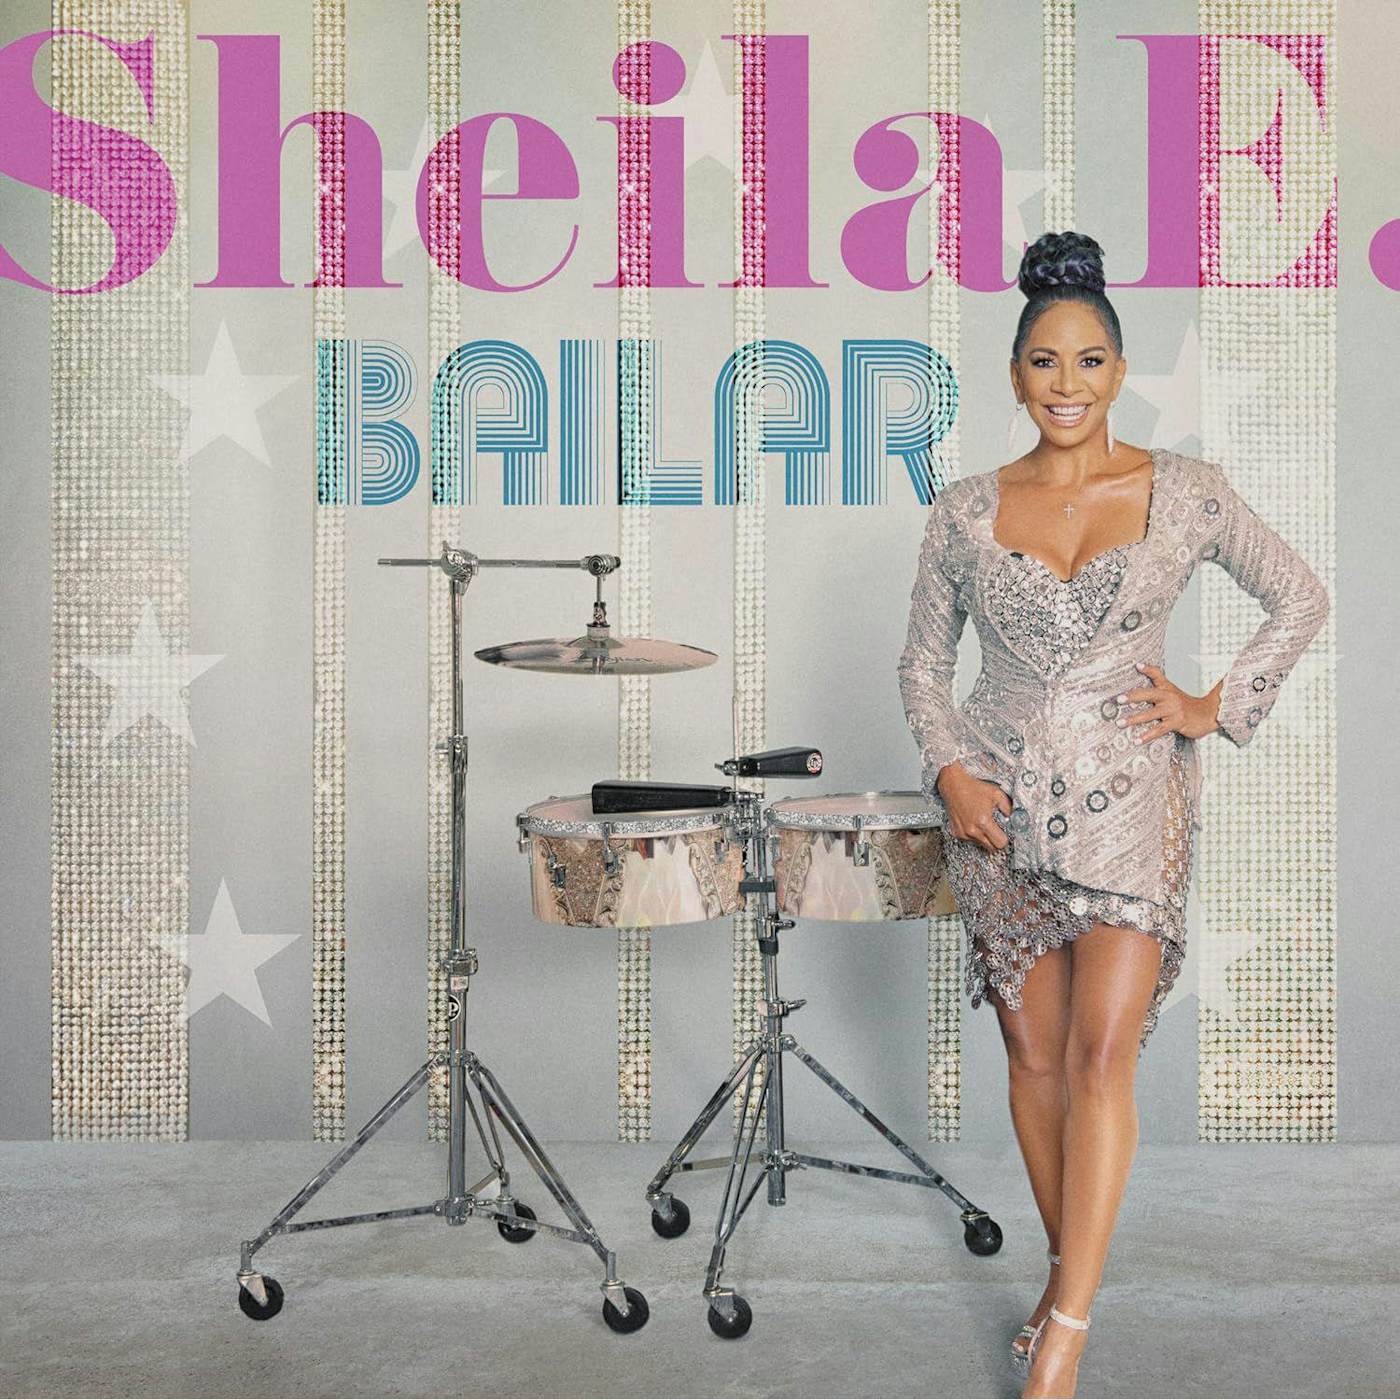 Sheila E. Bailar Vinyl Record